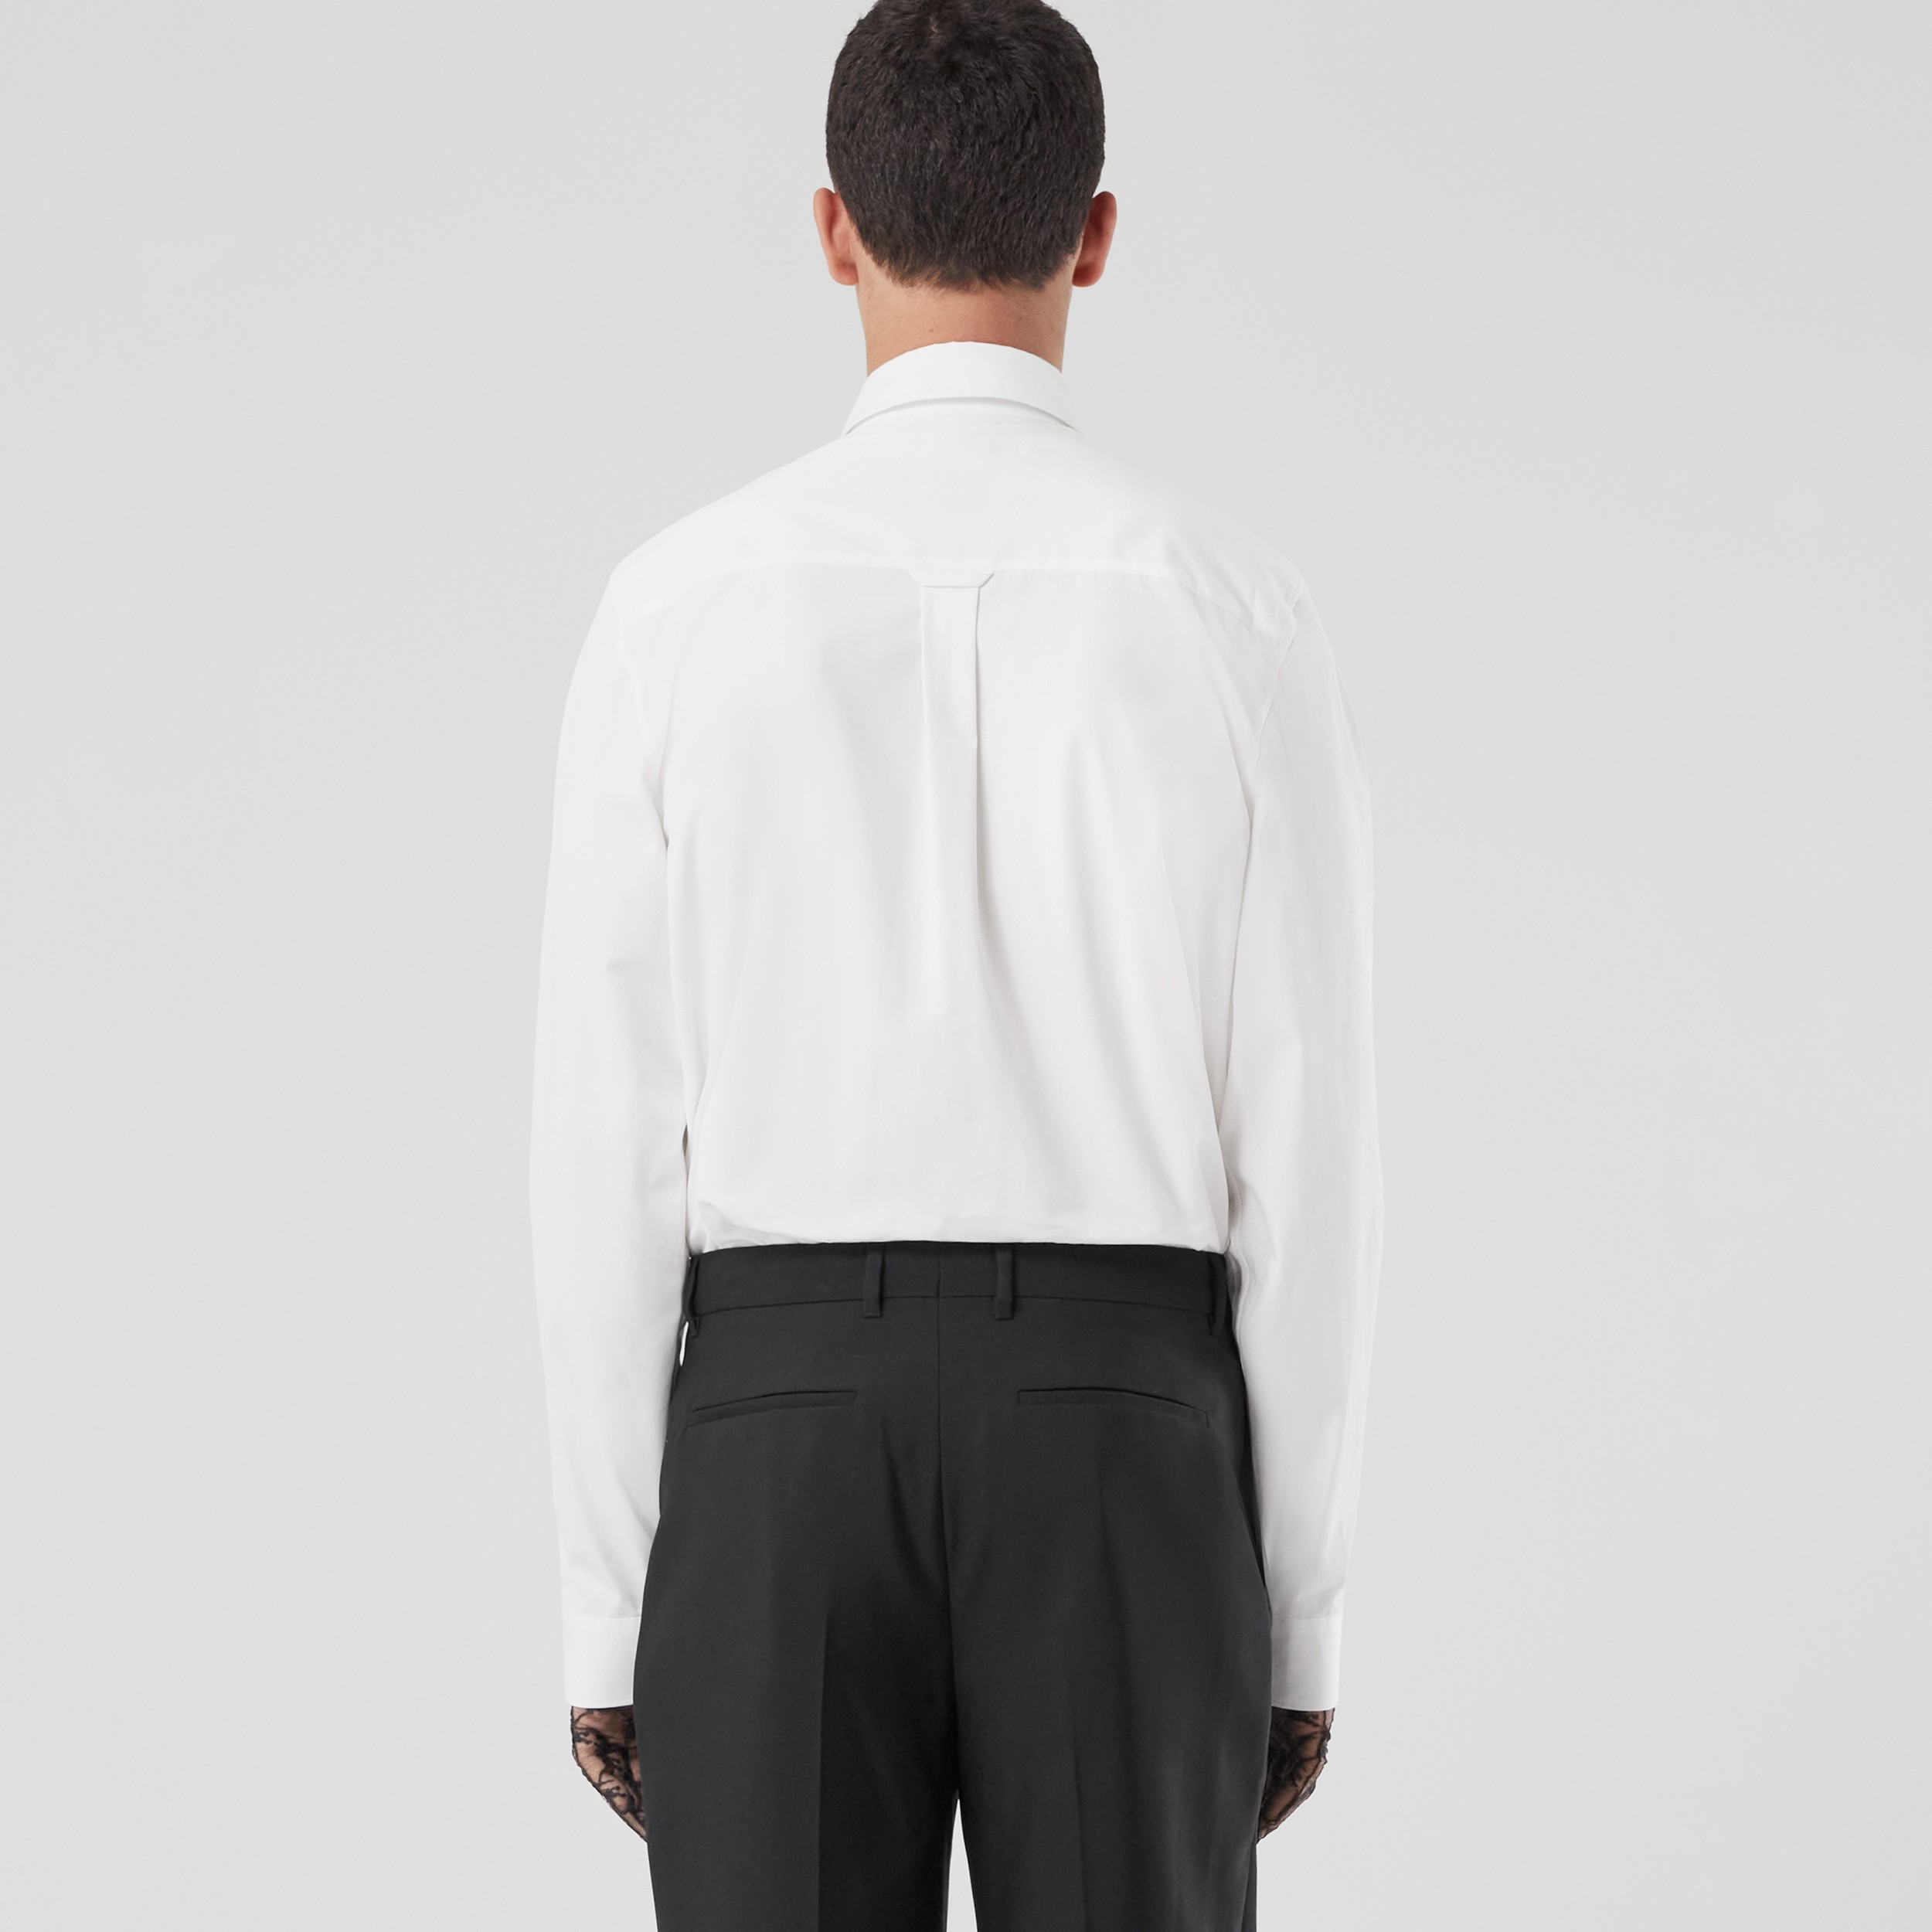 Baumwollpopelin-Hemd mit Druckknopf-Kragen (Weiß) - Herren | Burberry® - 2